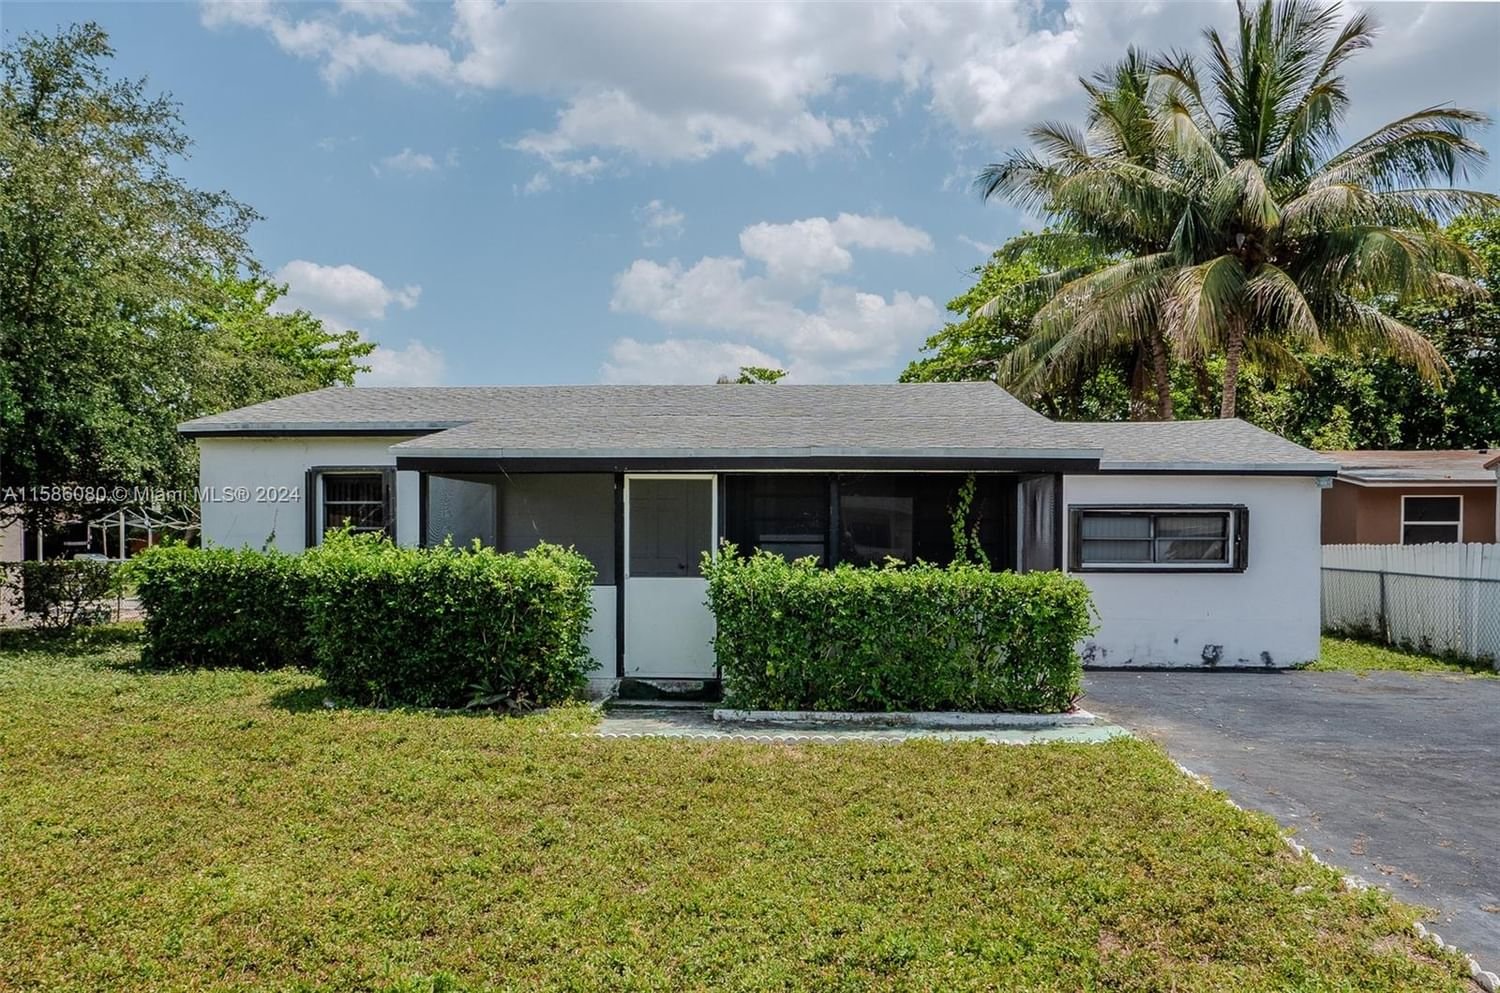 Real estate property located at 1438 100th St, Miami-Dade County, MIAMI PARK SEC 1, Miami, FL